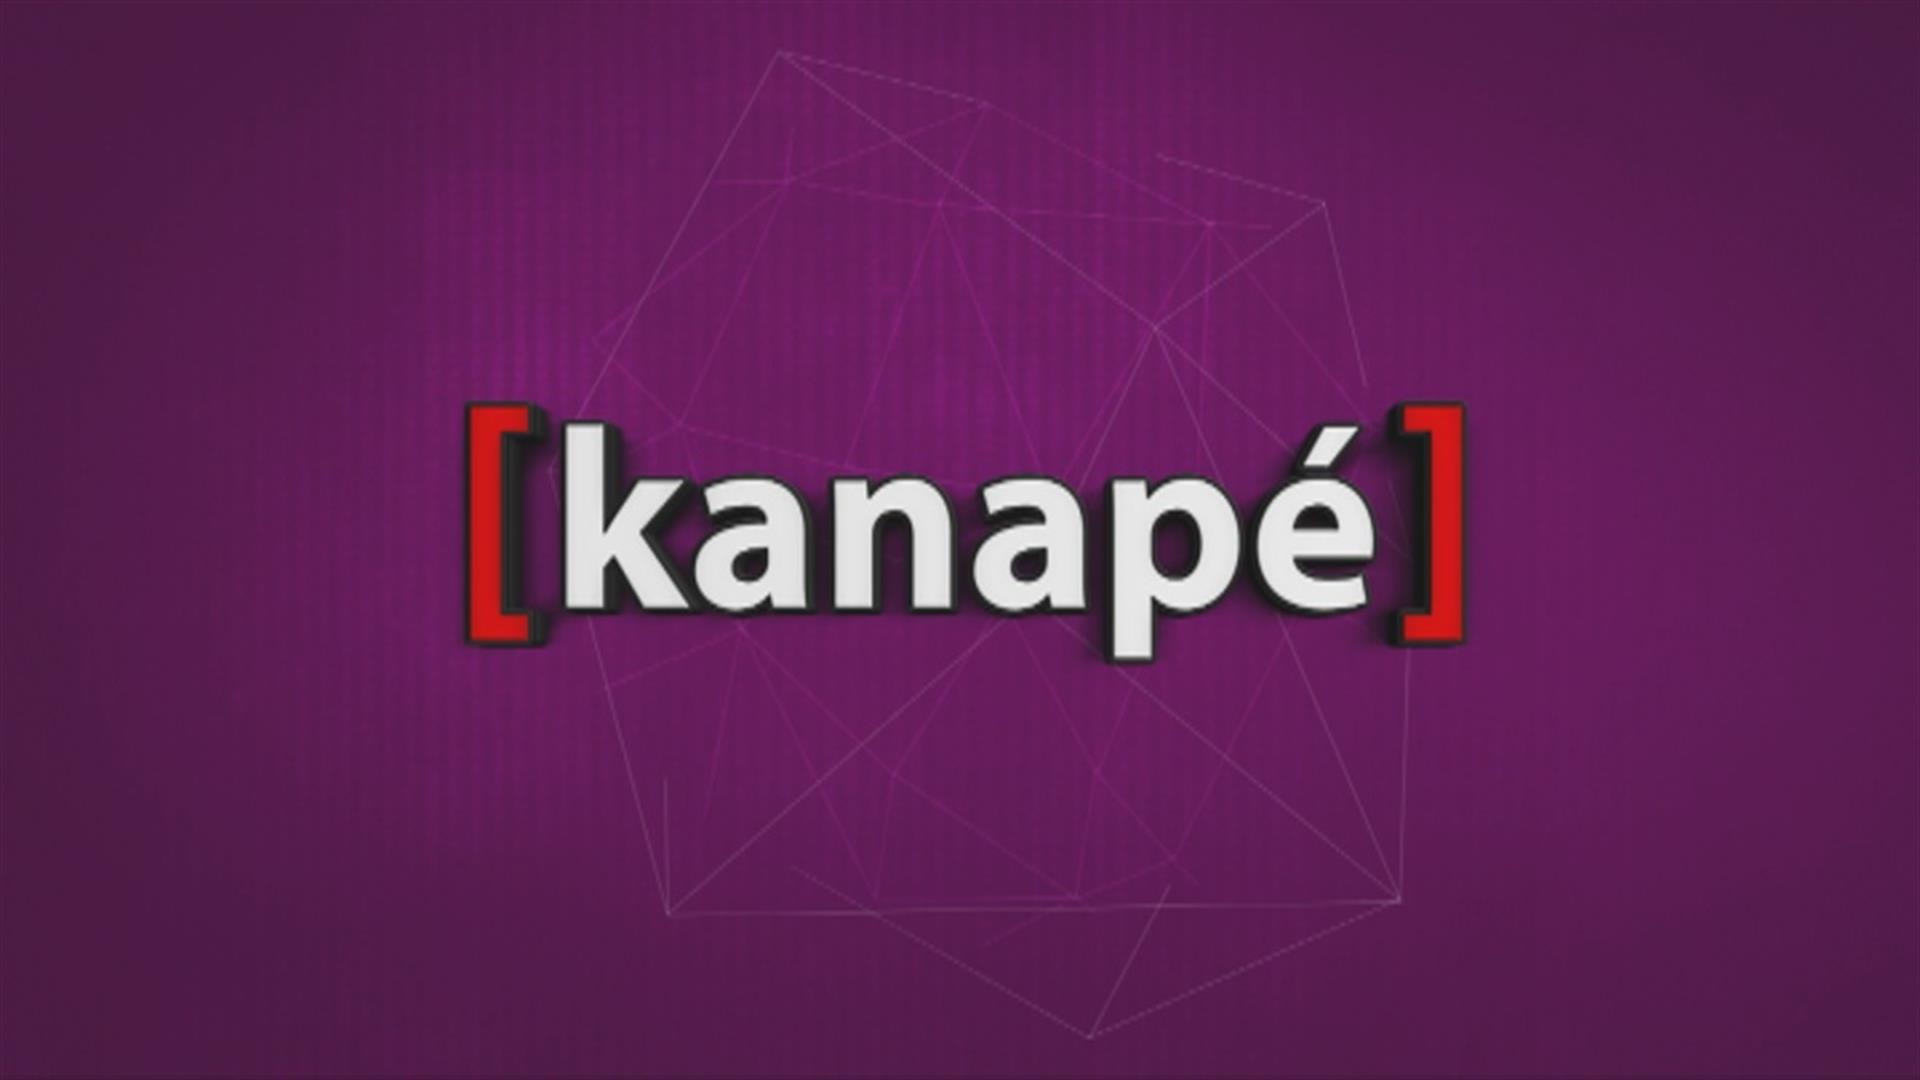 Kanape - Kanapé, oddaja za mlade, ponovitev